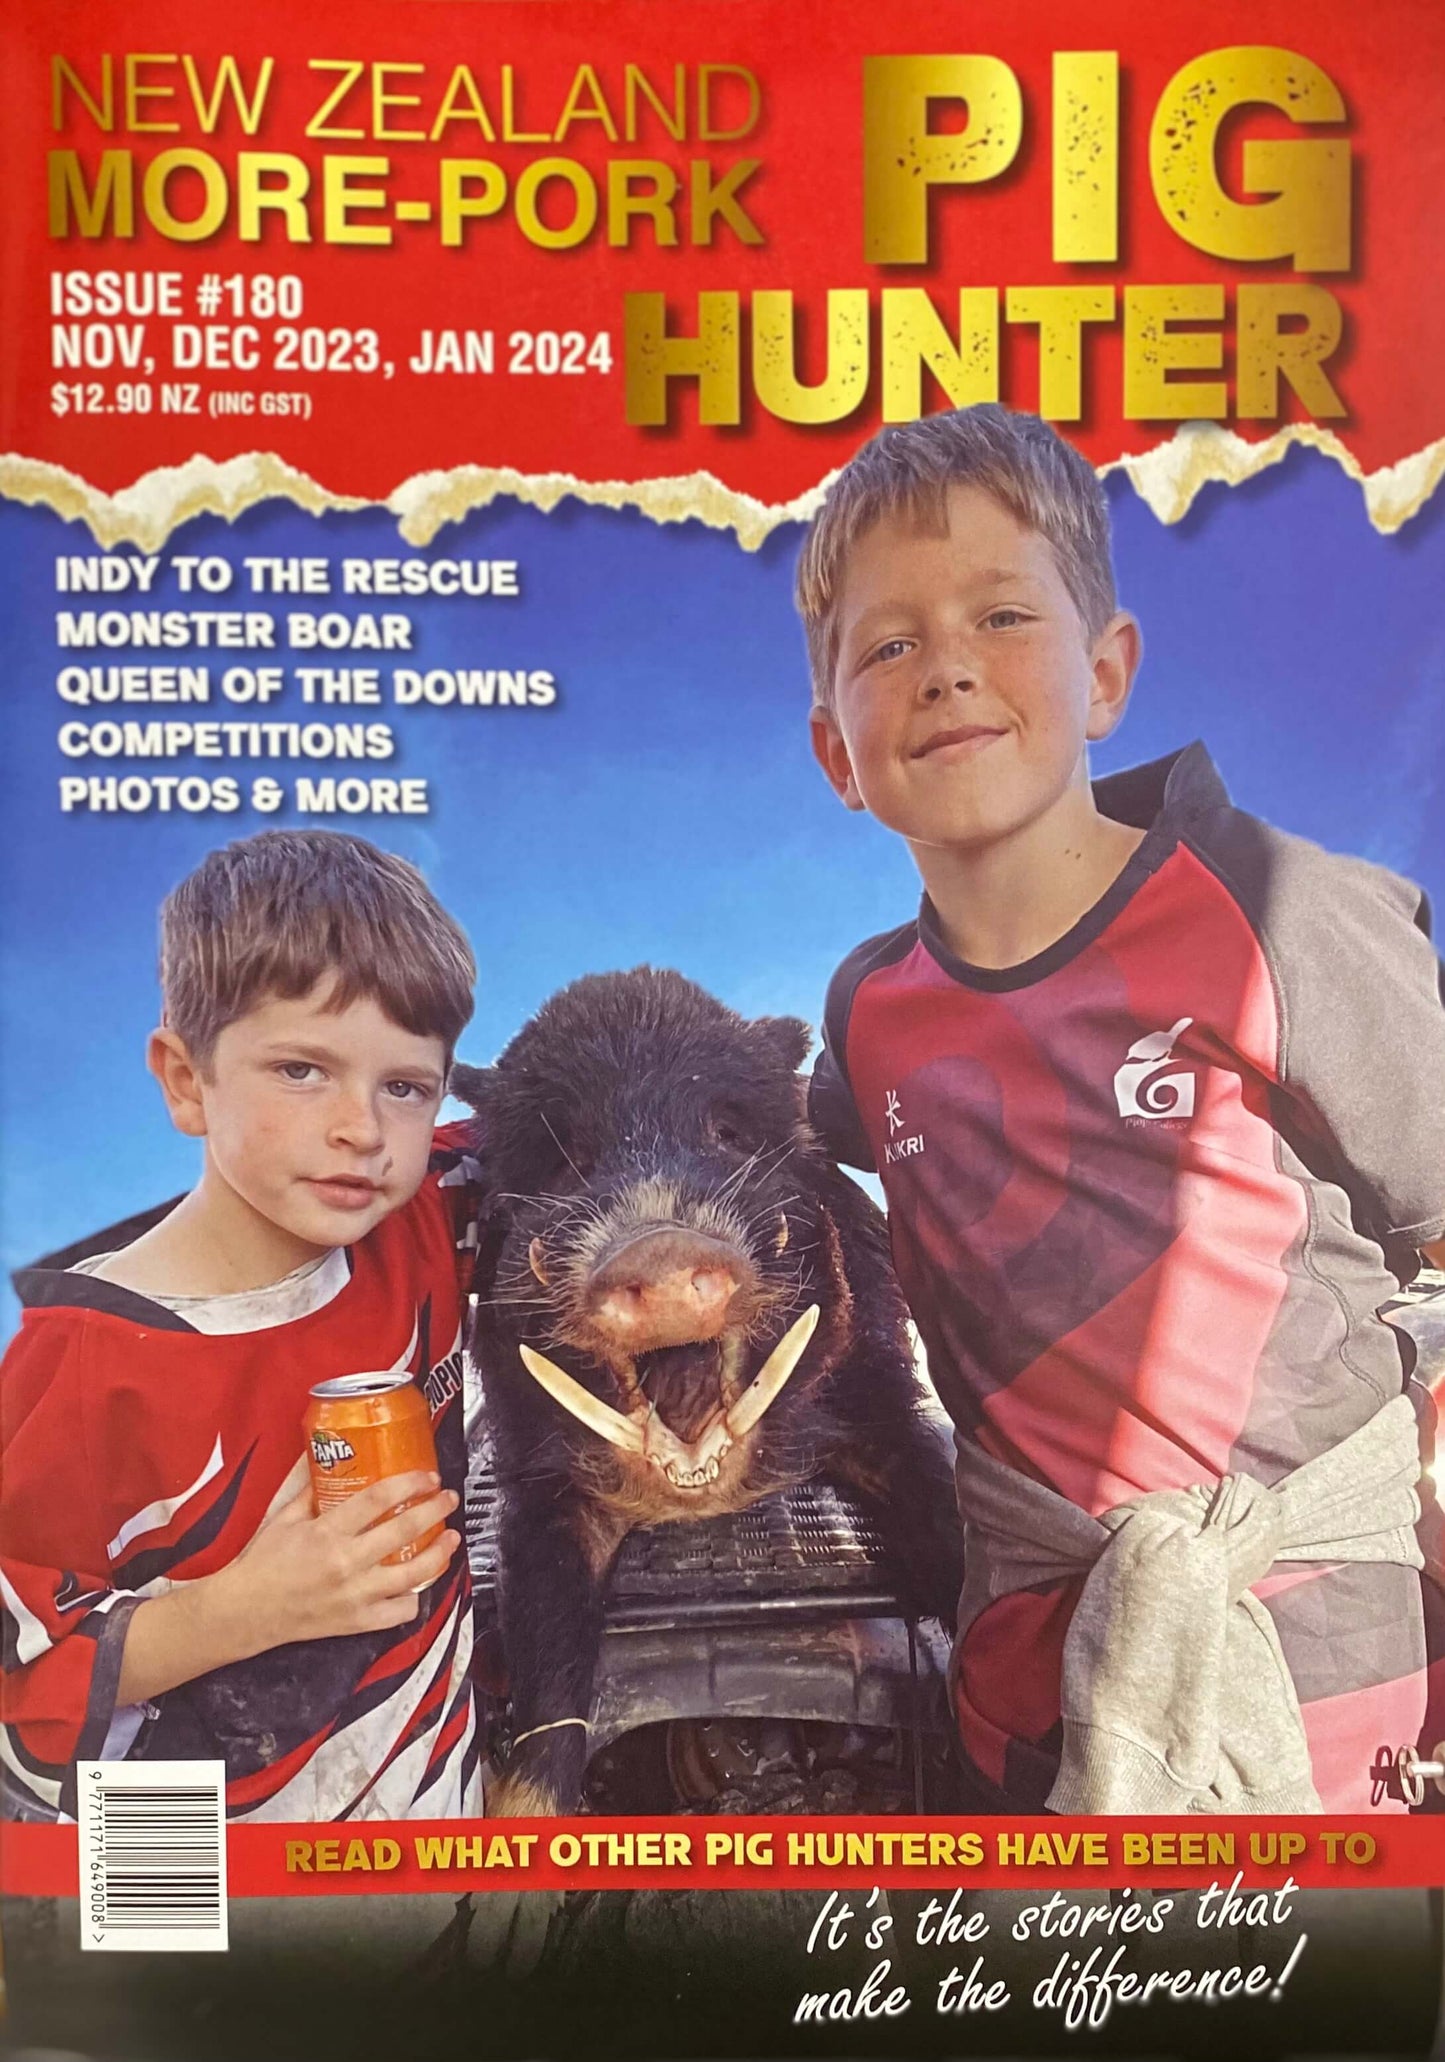 NZ More-Pork Pig Hunter Magazine